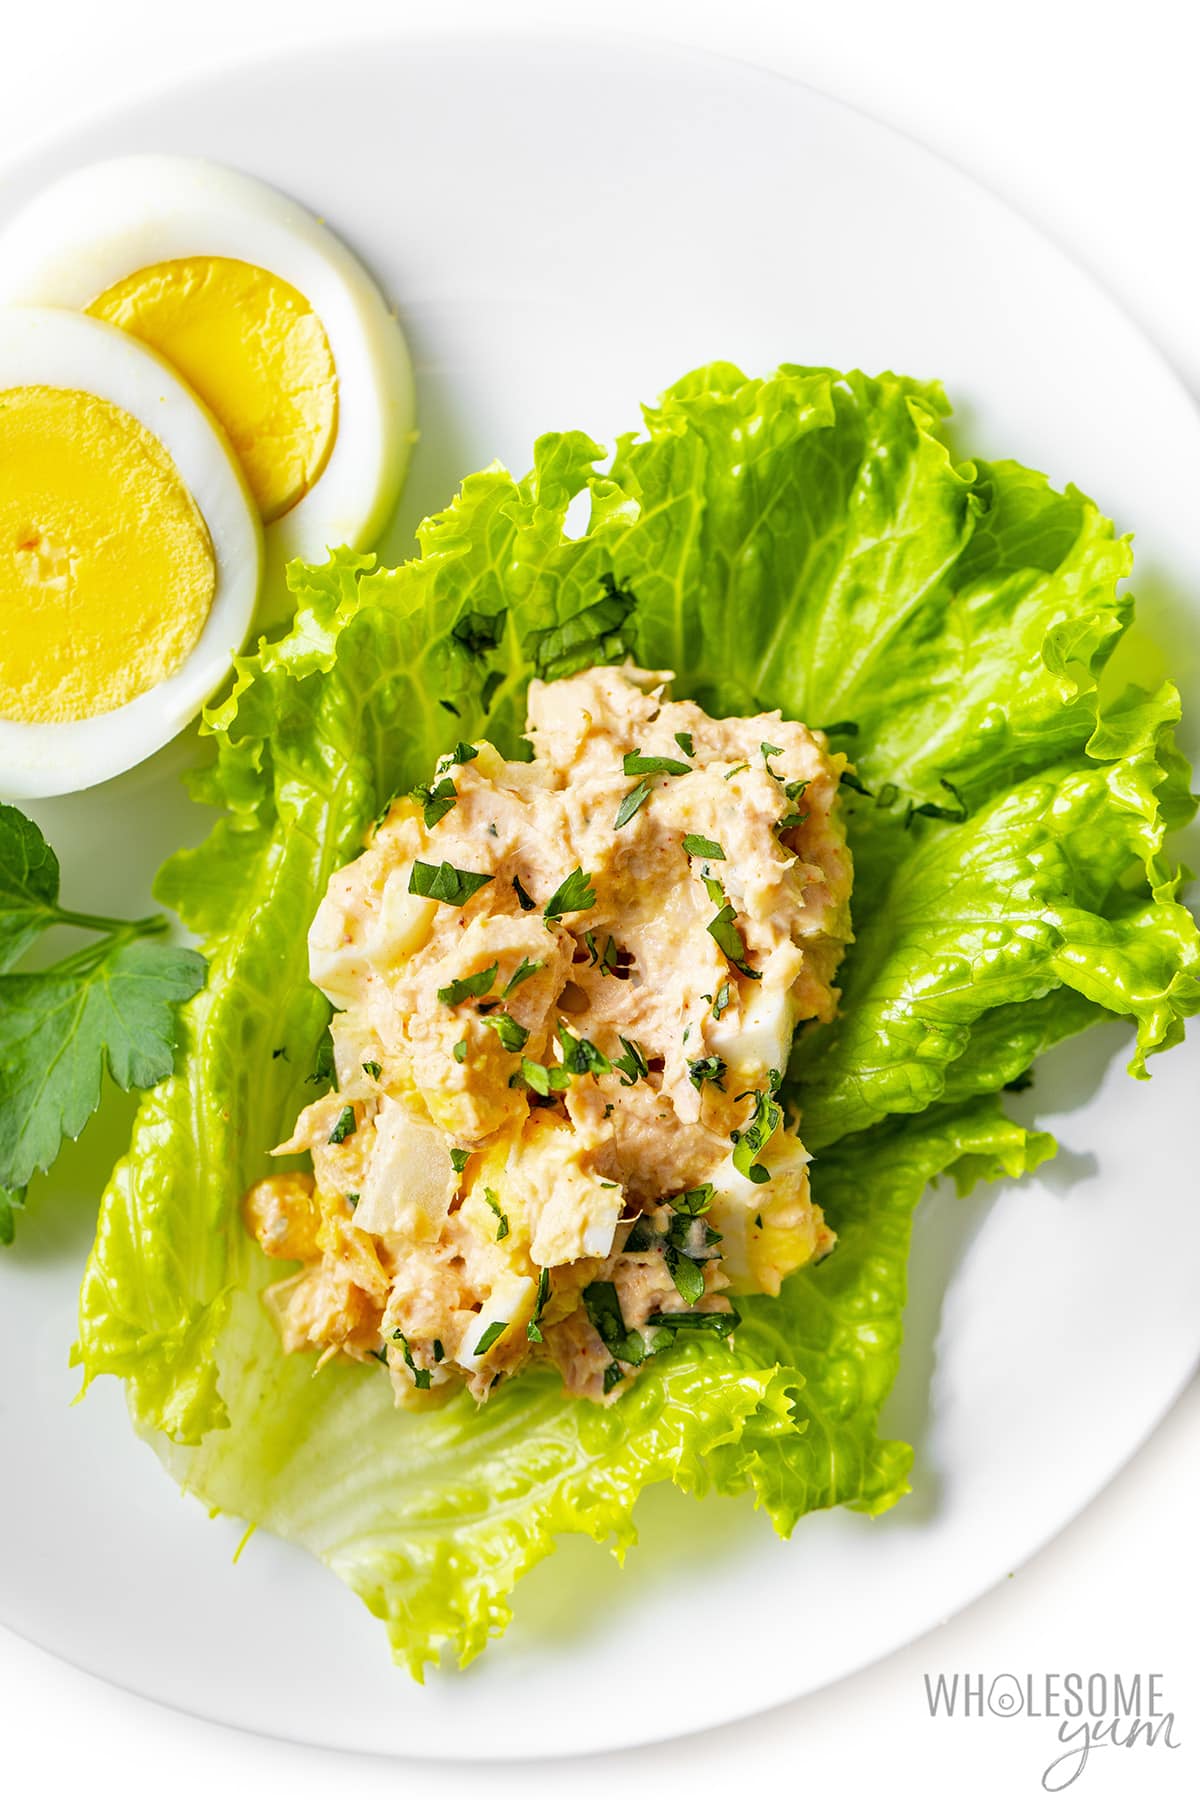 Tuna salad with egg on lettuce leaf.